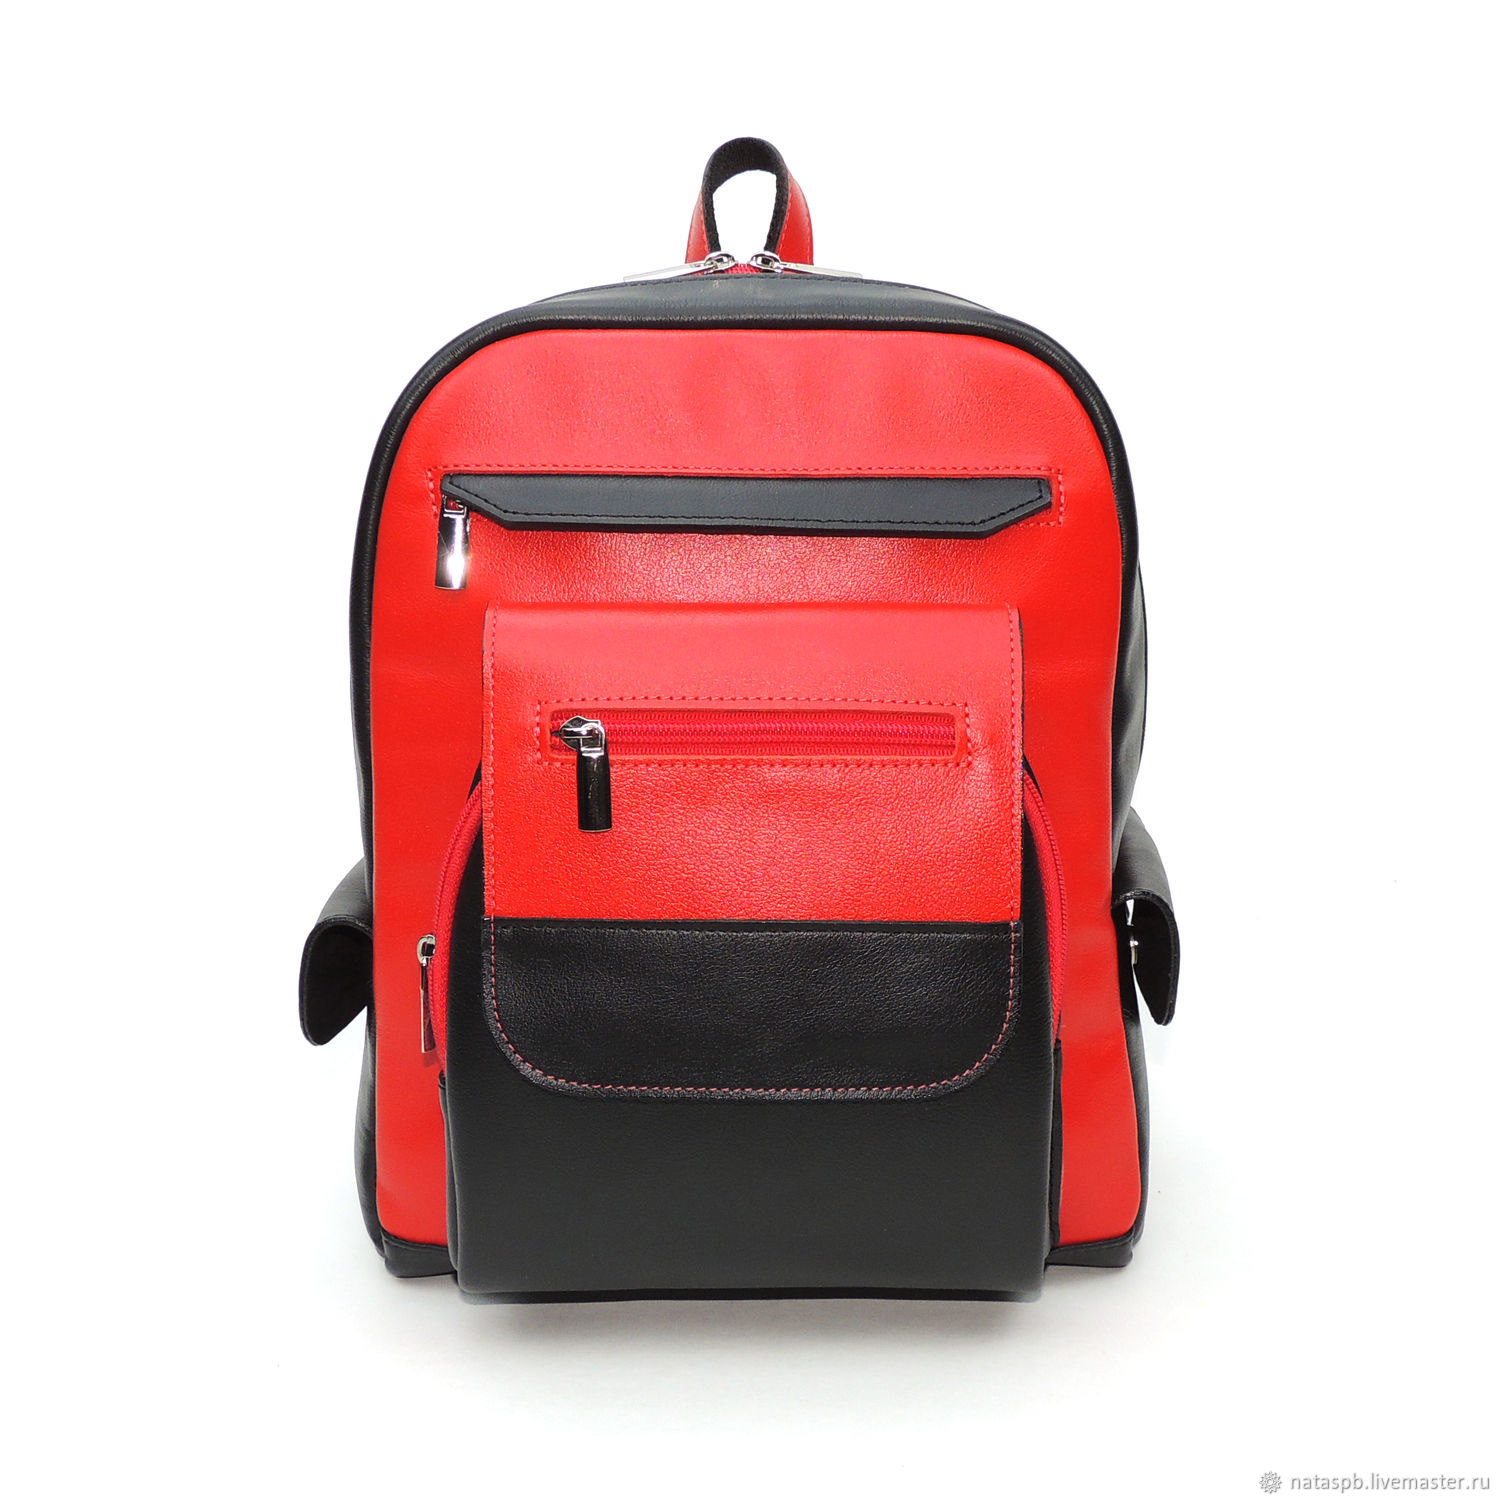  Рюкзак женский кожаный красно-черный Антарес Мод. Р47 – 791-1, Рюкзаки, Санкт-Петербург,  Фото №1